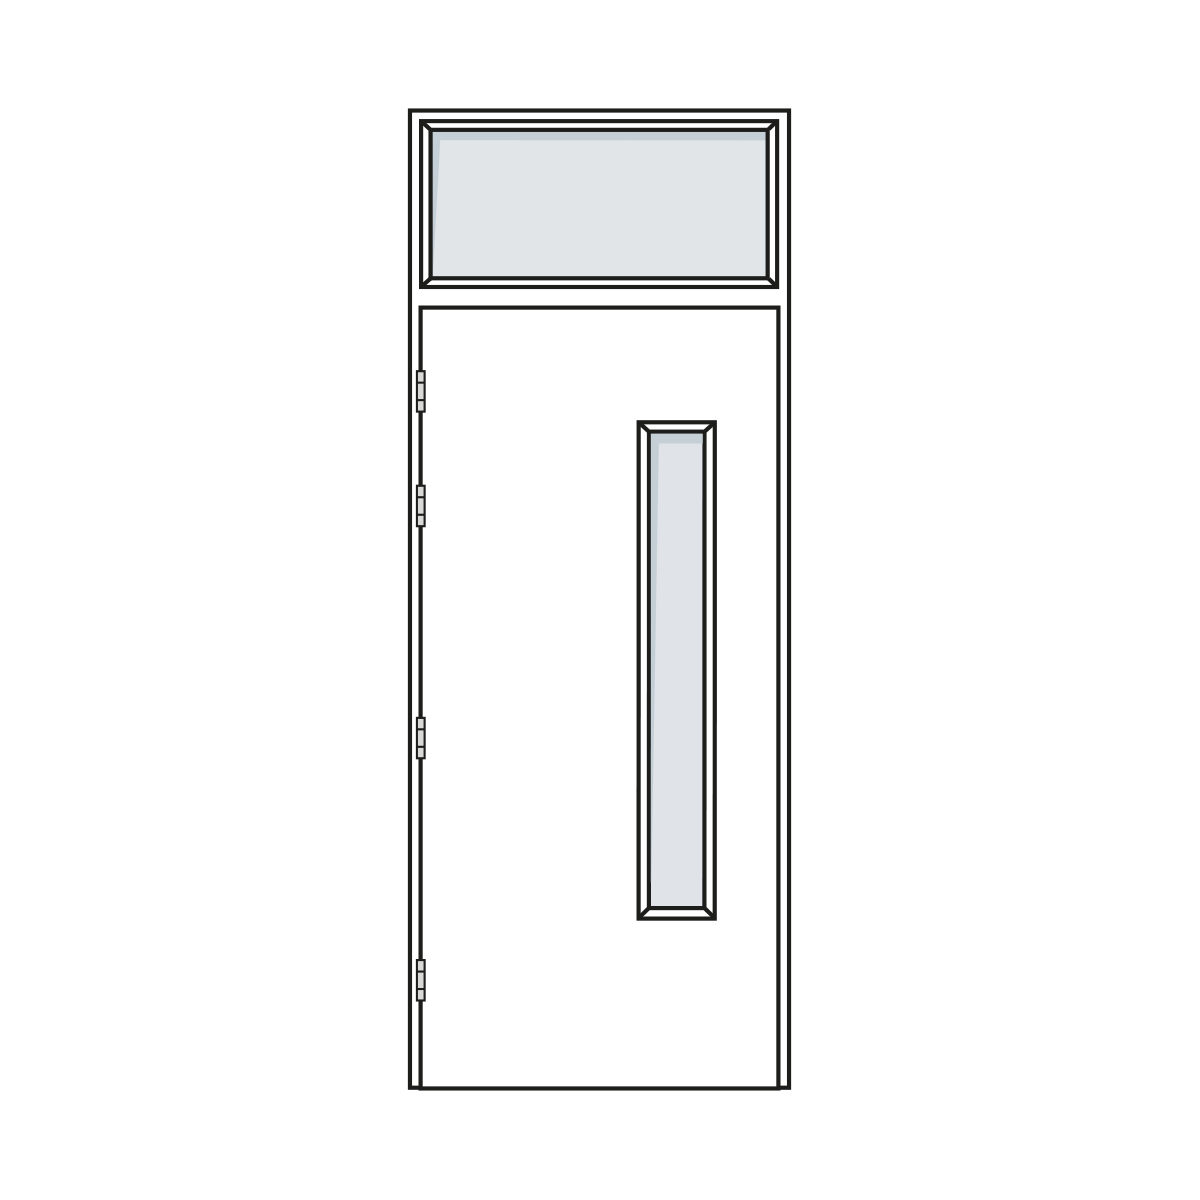 Door Configuration - Single Doorset with Standard Vision Panel and Fanlight - Code S-VP01-FL